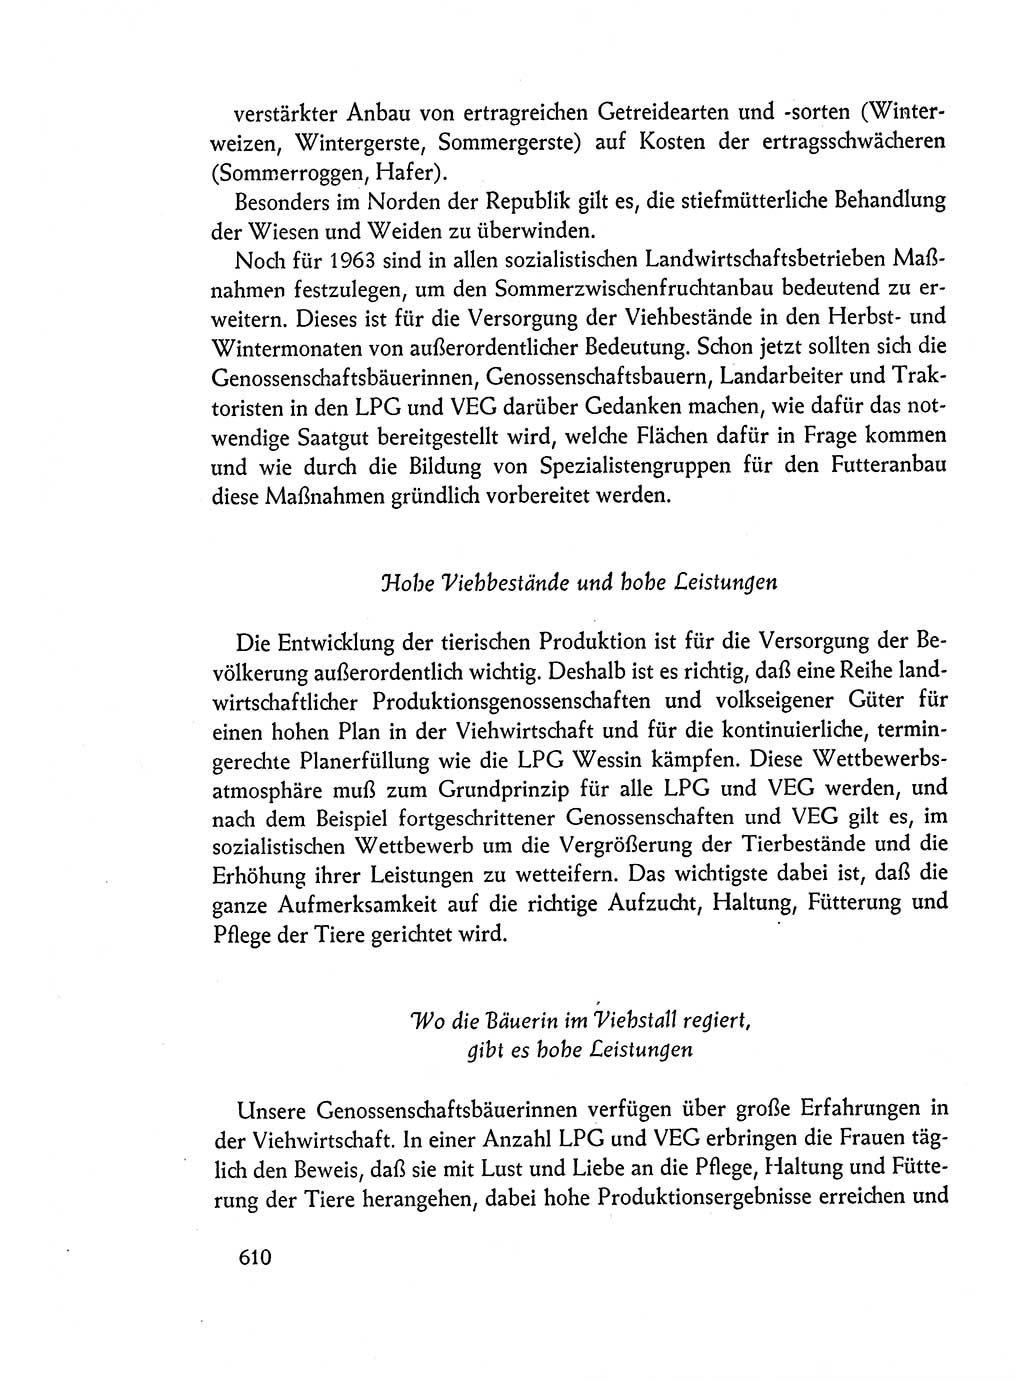 Dokumente der Sozialistischen Einheitspartei Deutschlands (SED) [Deutsche Demokratische Republik (DDR)] 1962-1963, Seite 610 (Dok. SED DDR 1962-1963, S. 610)